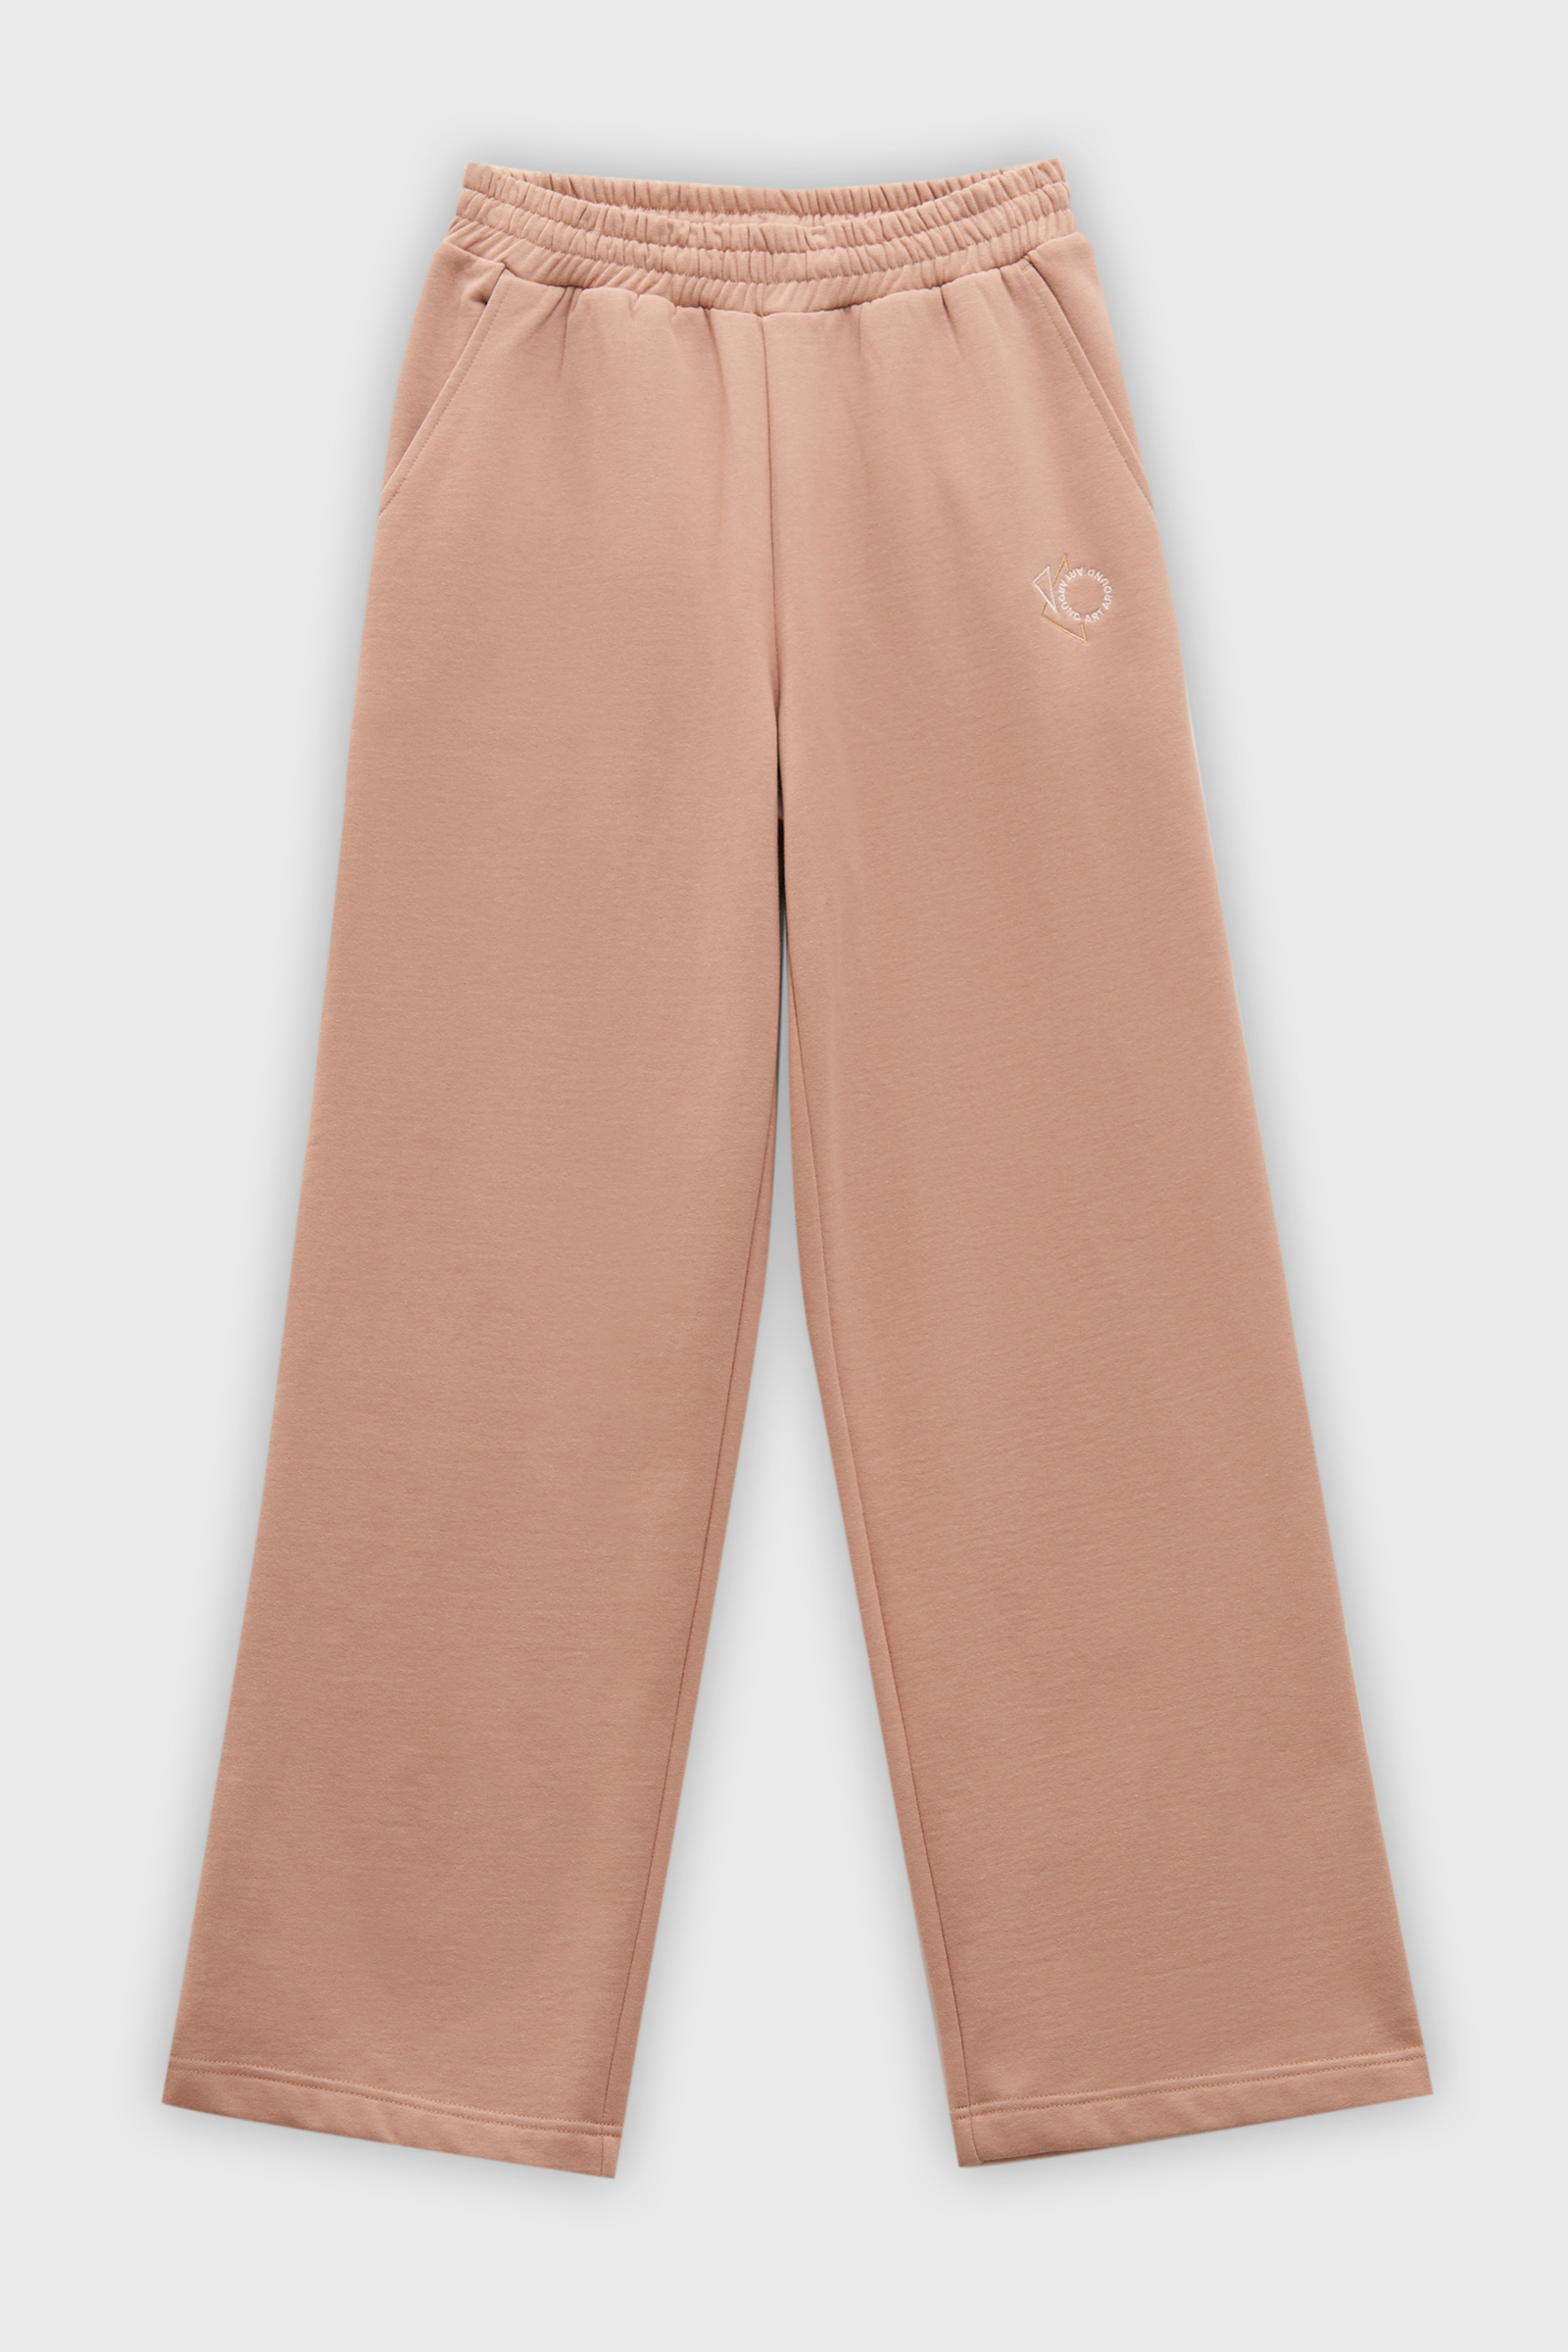 Спортивные брюки женские Finn Flare FAD110180 розовые S